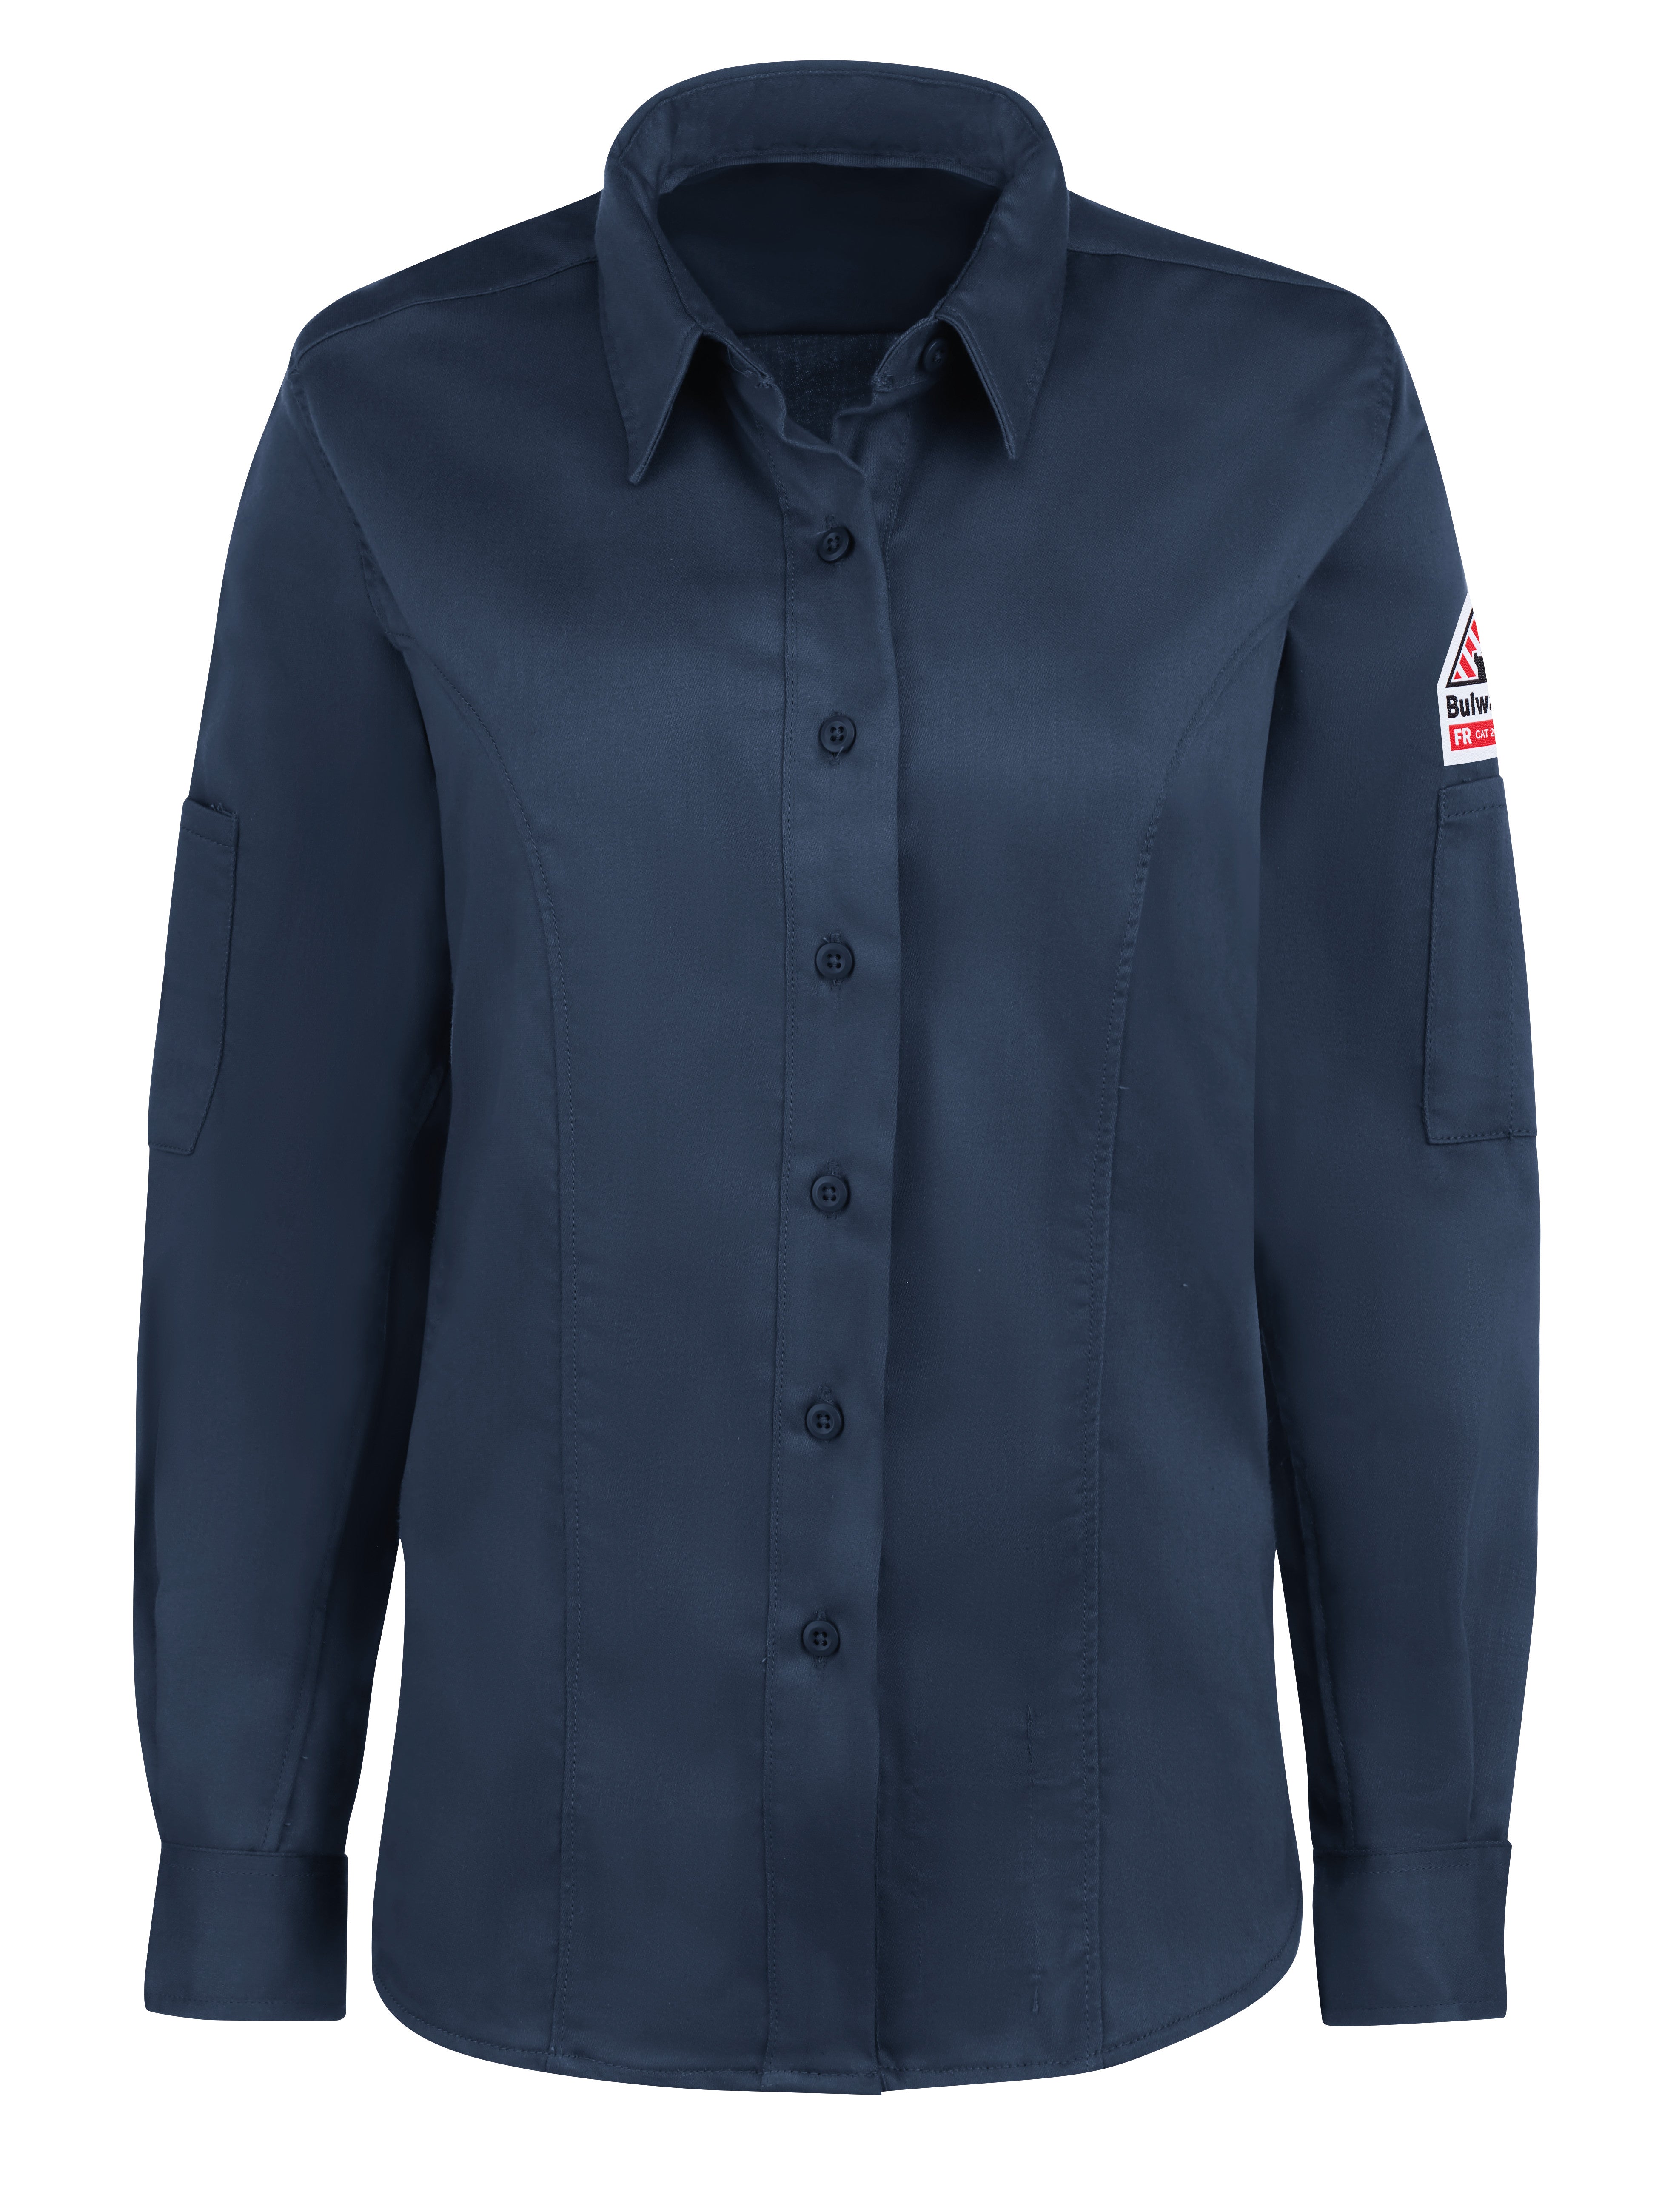 iQ Series Comfort Woven Women's Long Sleeve Shirt QS33 - Dark Blue-eSafety Supplies, Inc